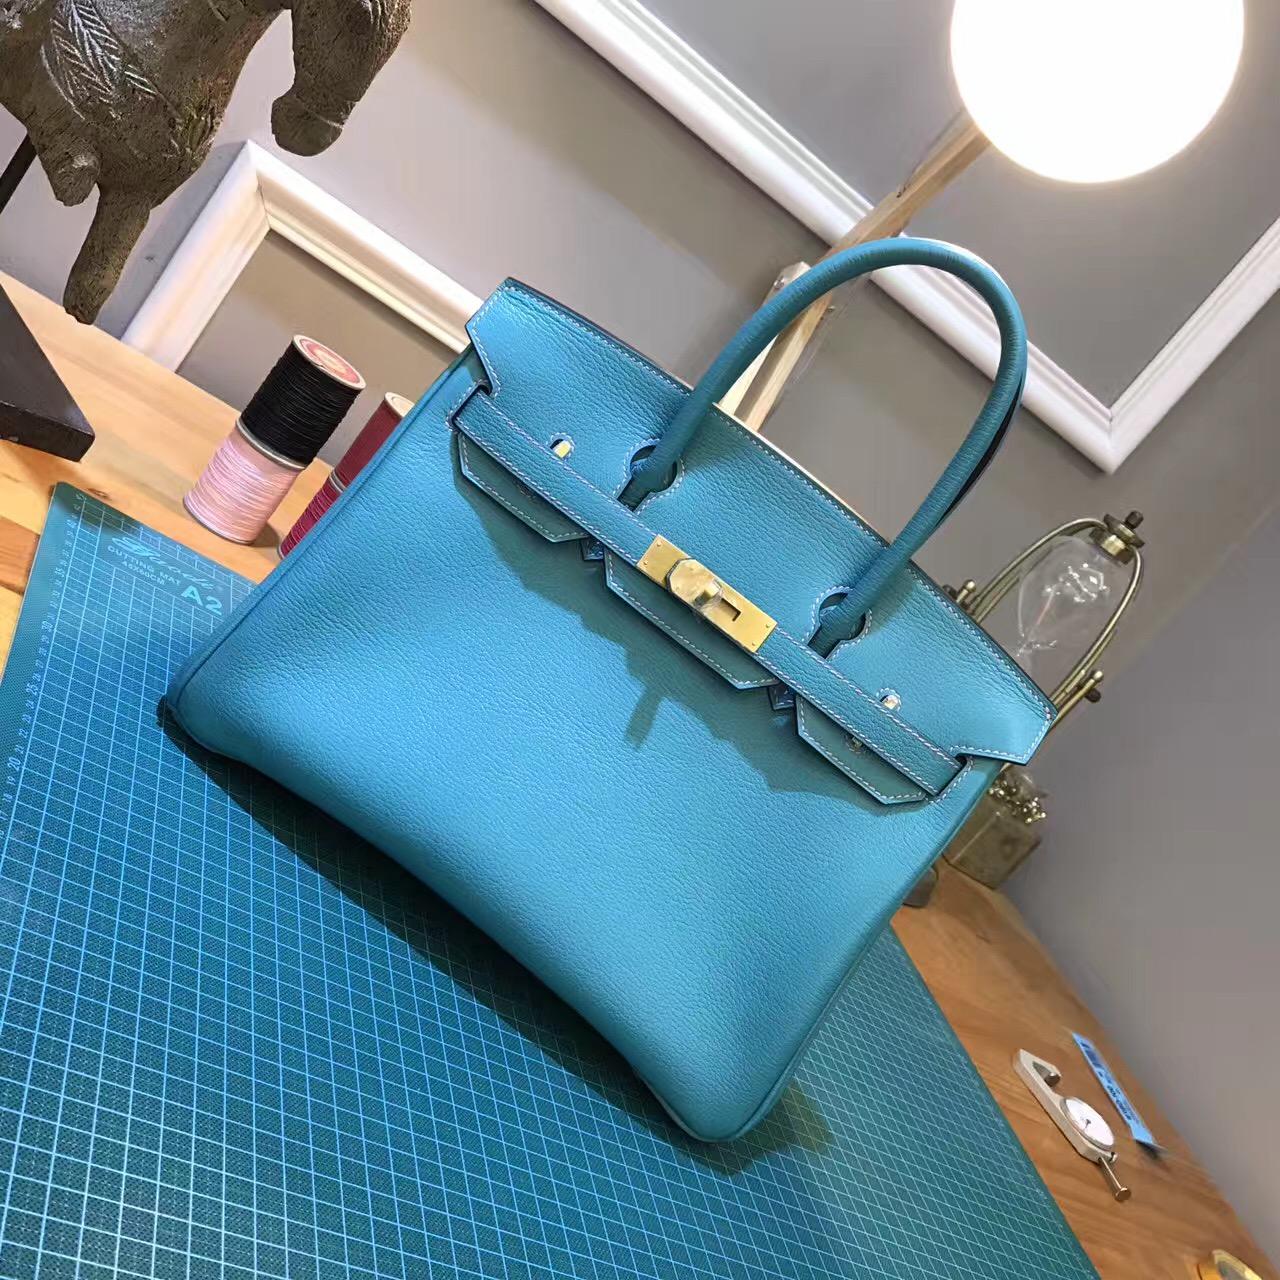 愛馬仕鉑金包 Hermes birkin Bag 30cm 超美的藍綠混合色 金扣金屬